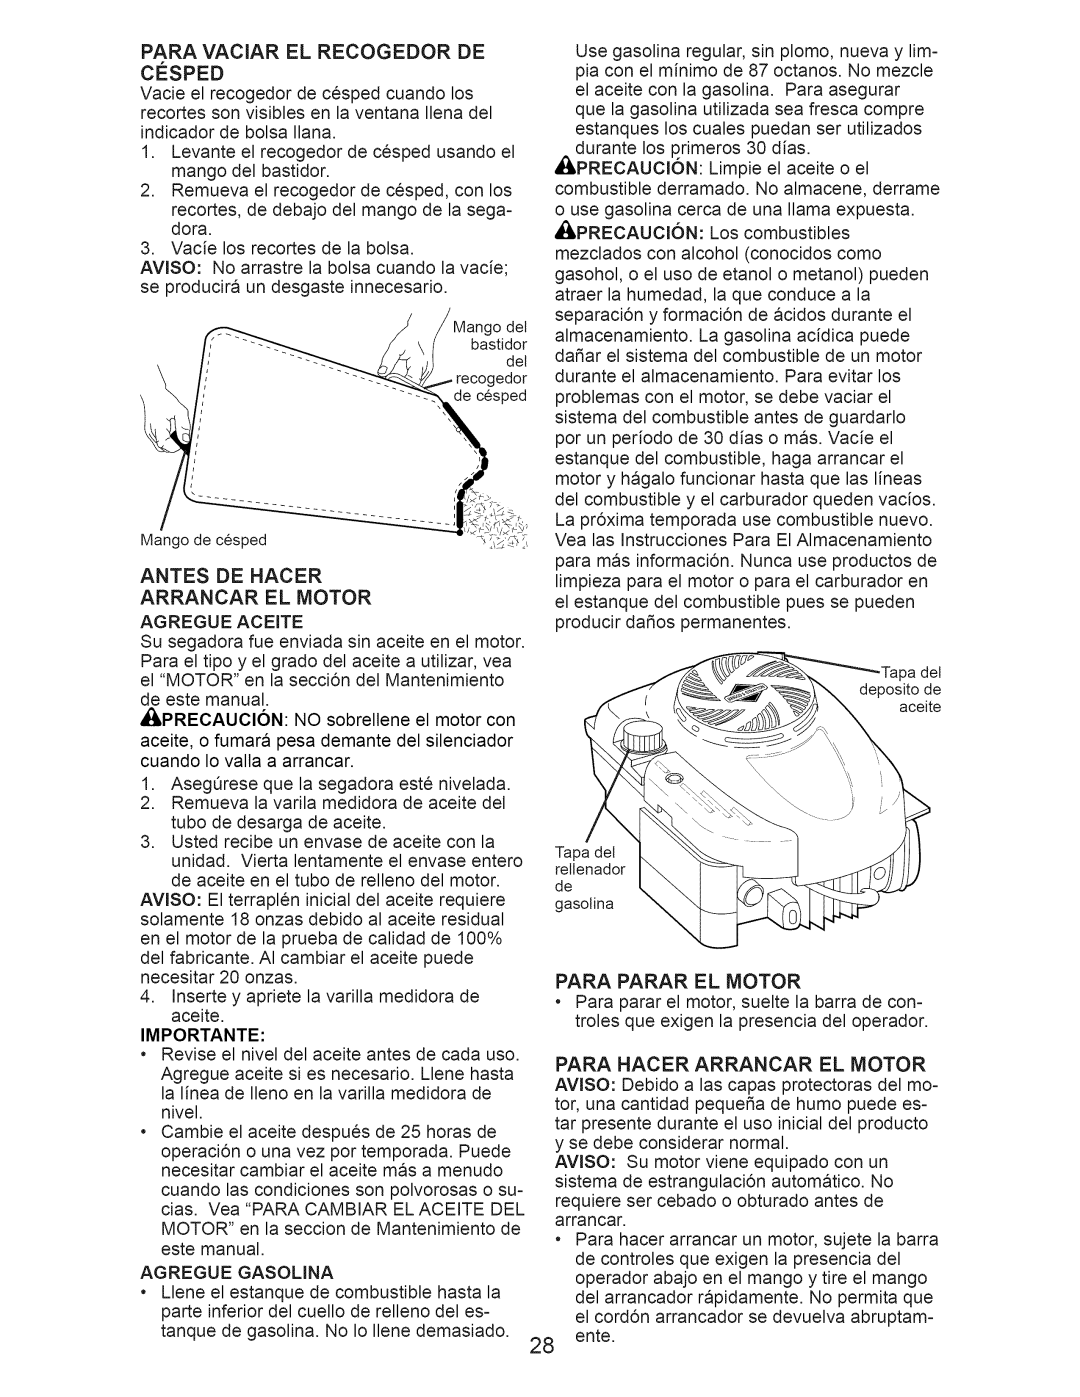 Craftsman 917.374941 manual Antes De Hacer Arrancar El Motor, Para Hacer Arrancar El Motor, Importante 